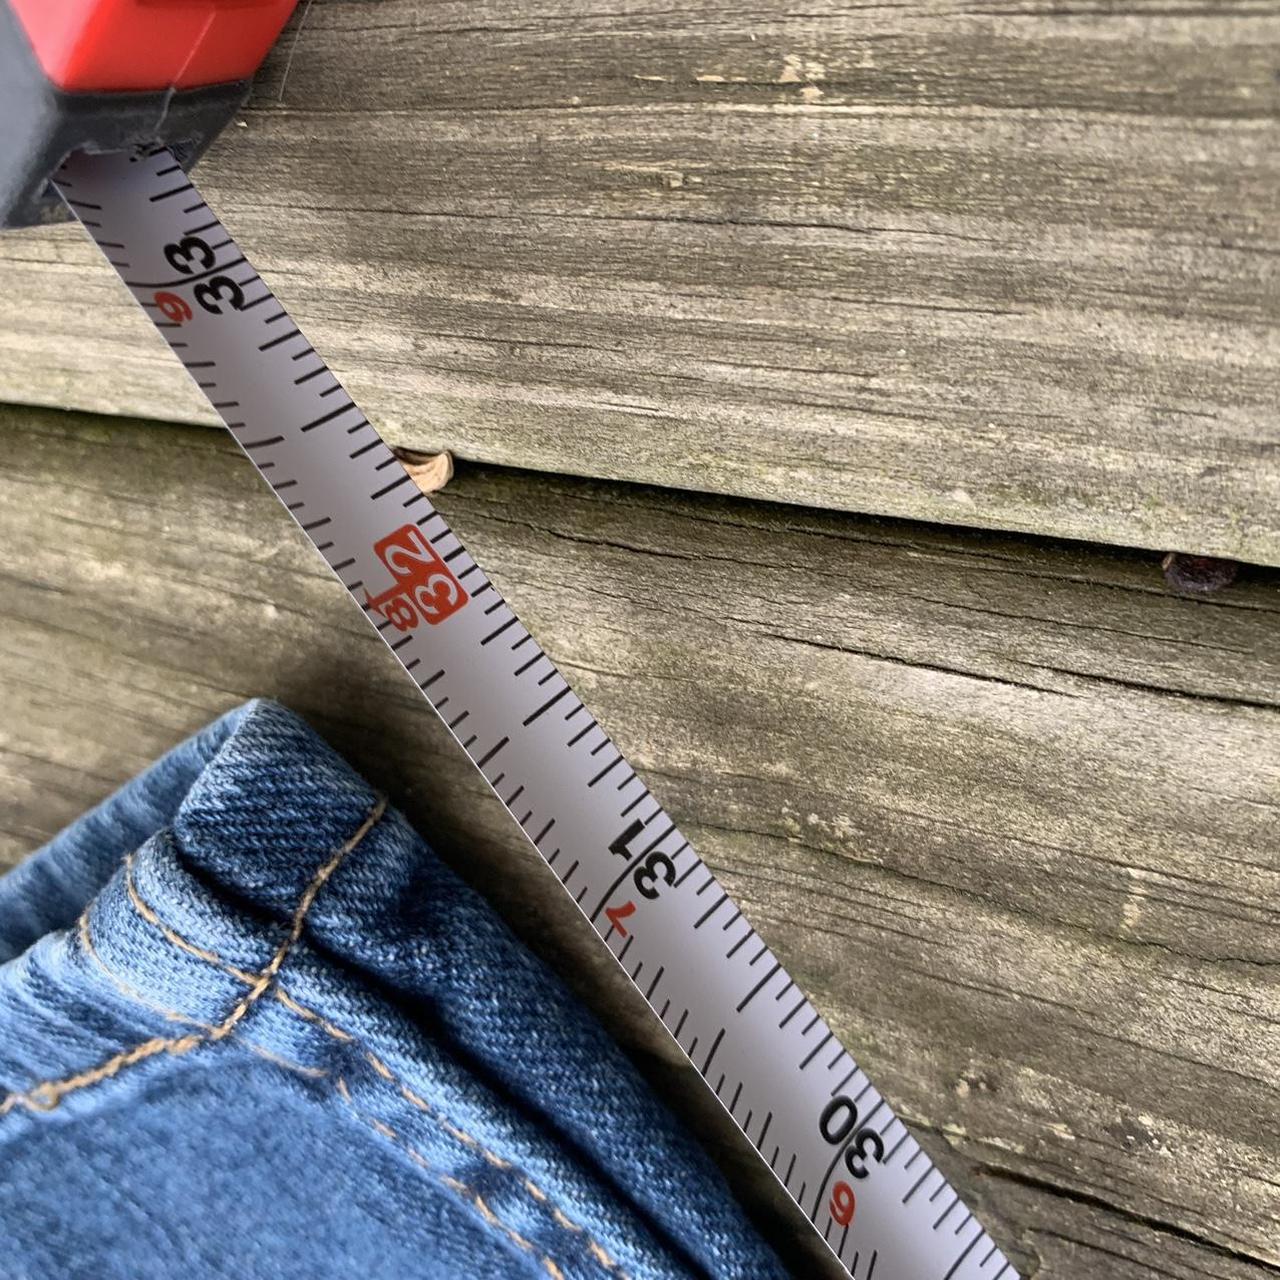 Vintage Levi 514 jeans measures to a 34W 32L ... - Depop